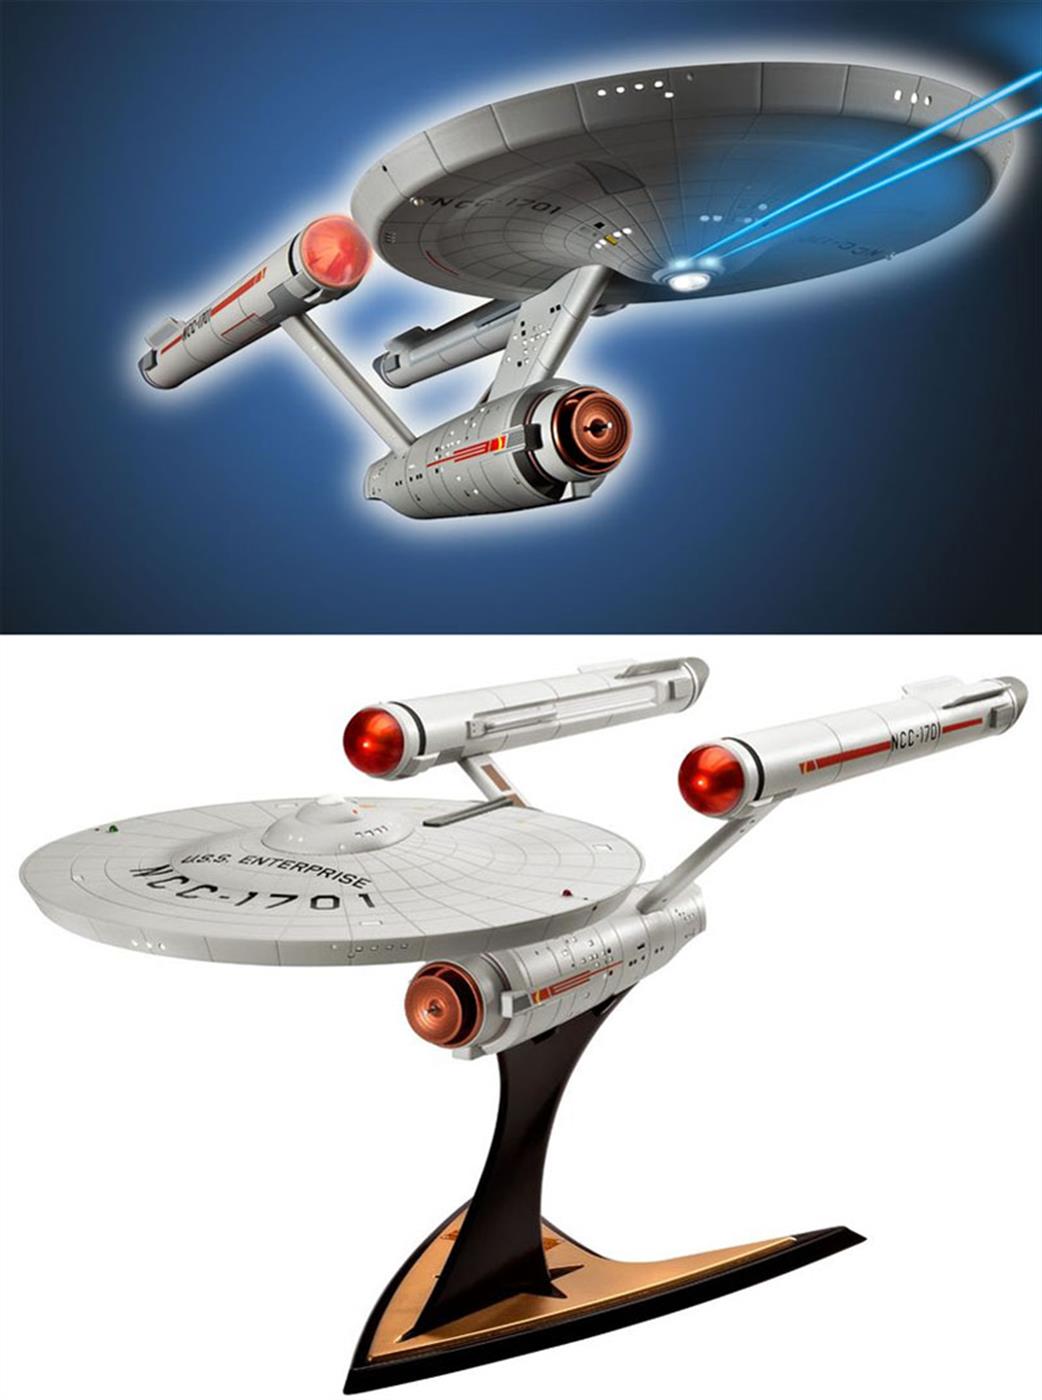 Revell 1/600 04991 Enterprise NCC-1701 kit from Star Trek